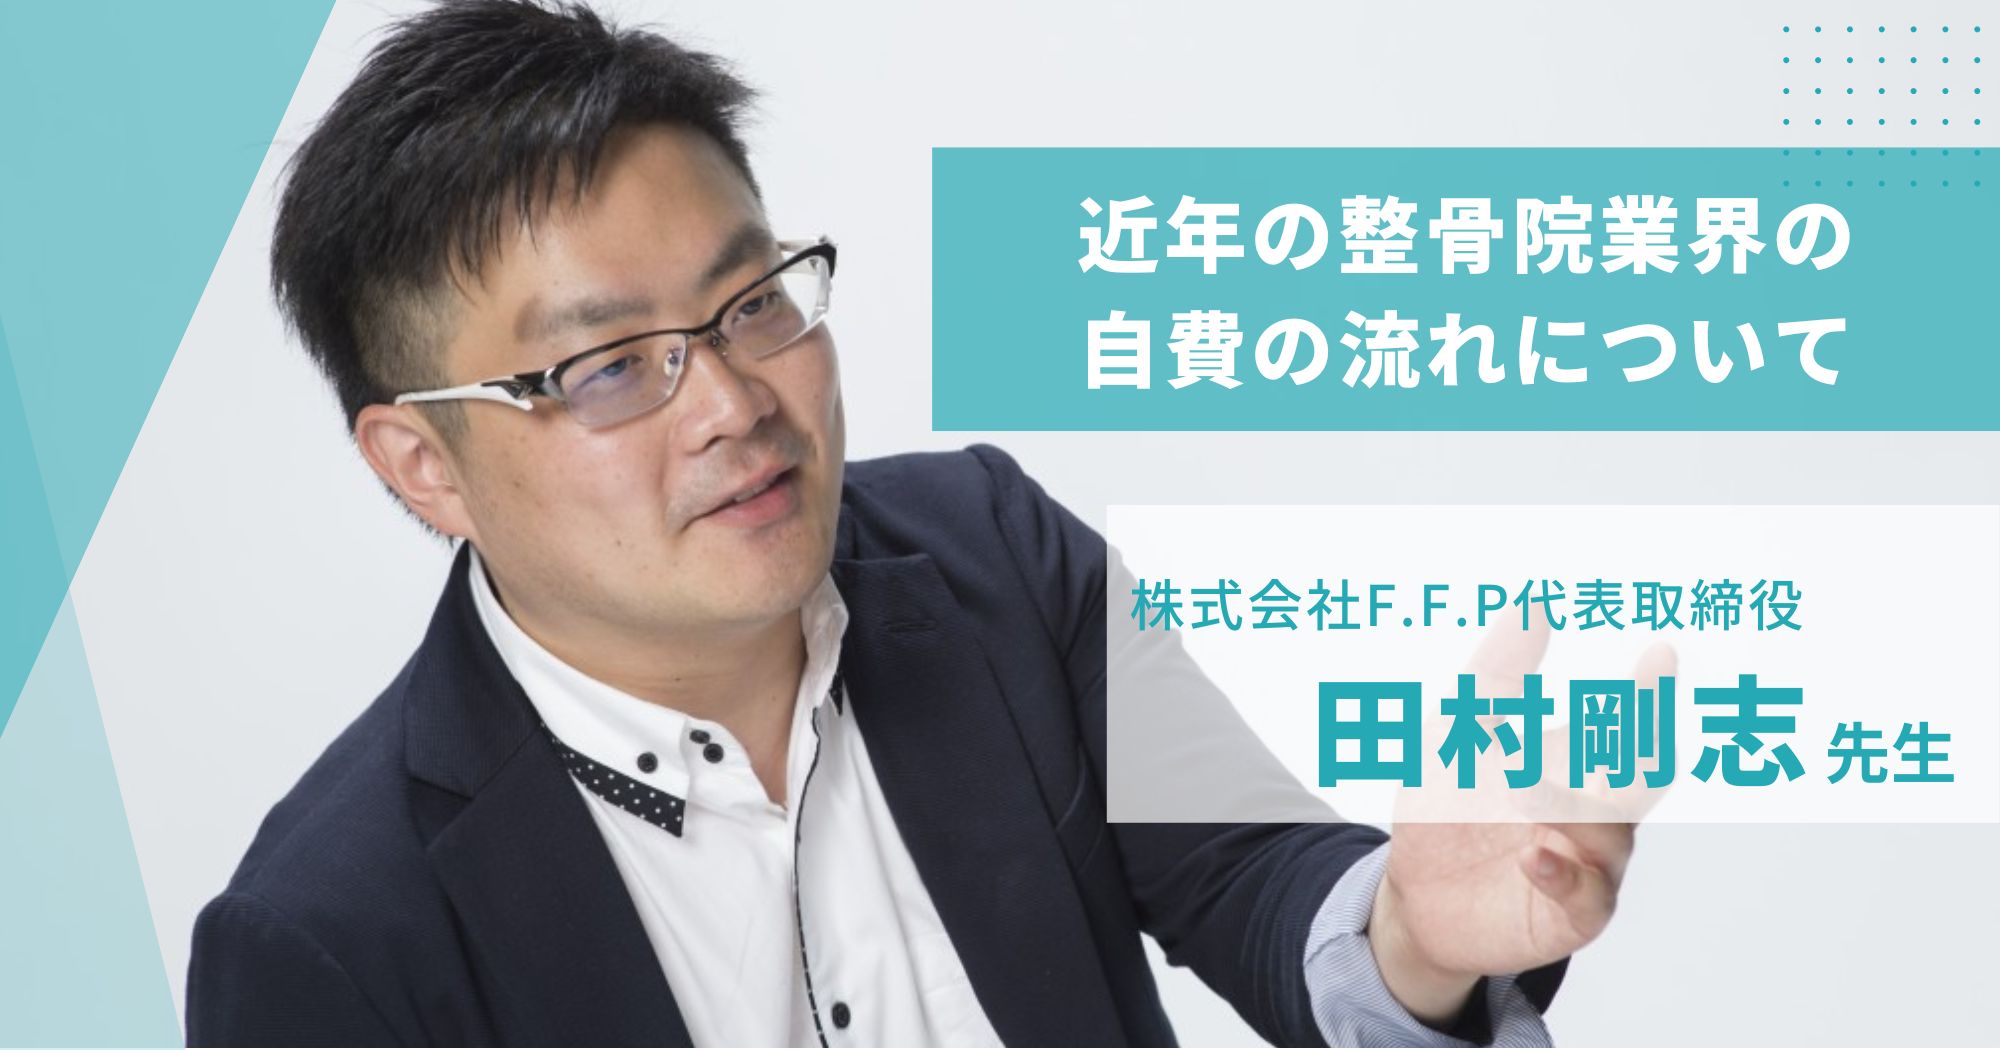 近年の整骨院業界の自費の流れについて/株式会社F.F.P代表取締役 田村剛志先生